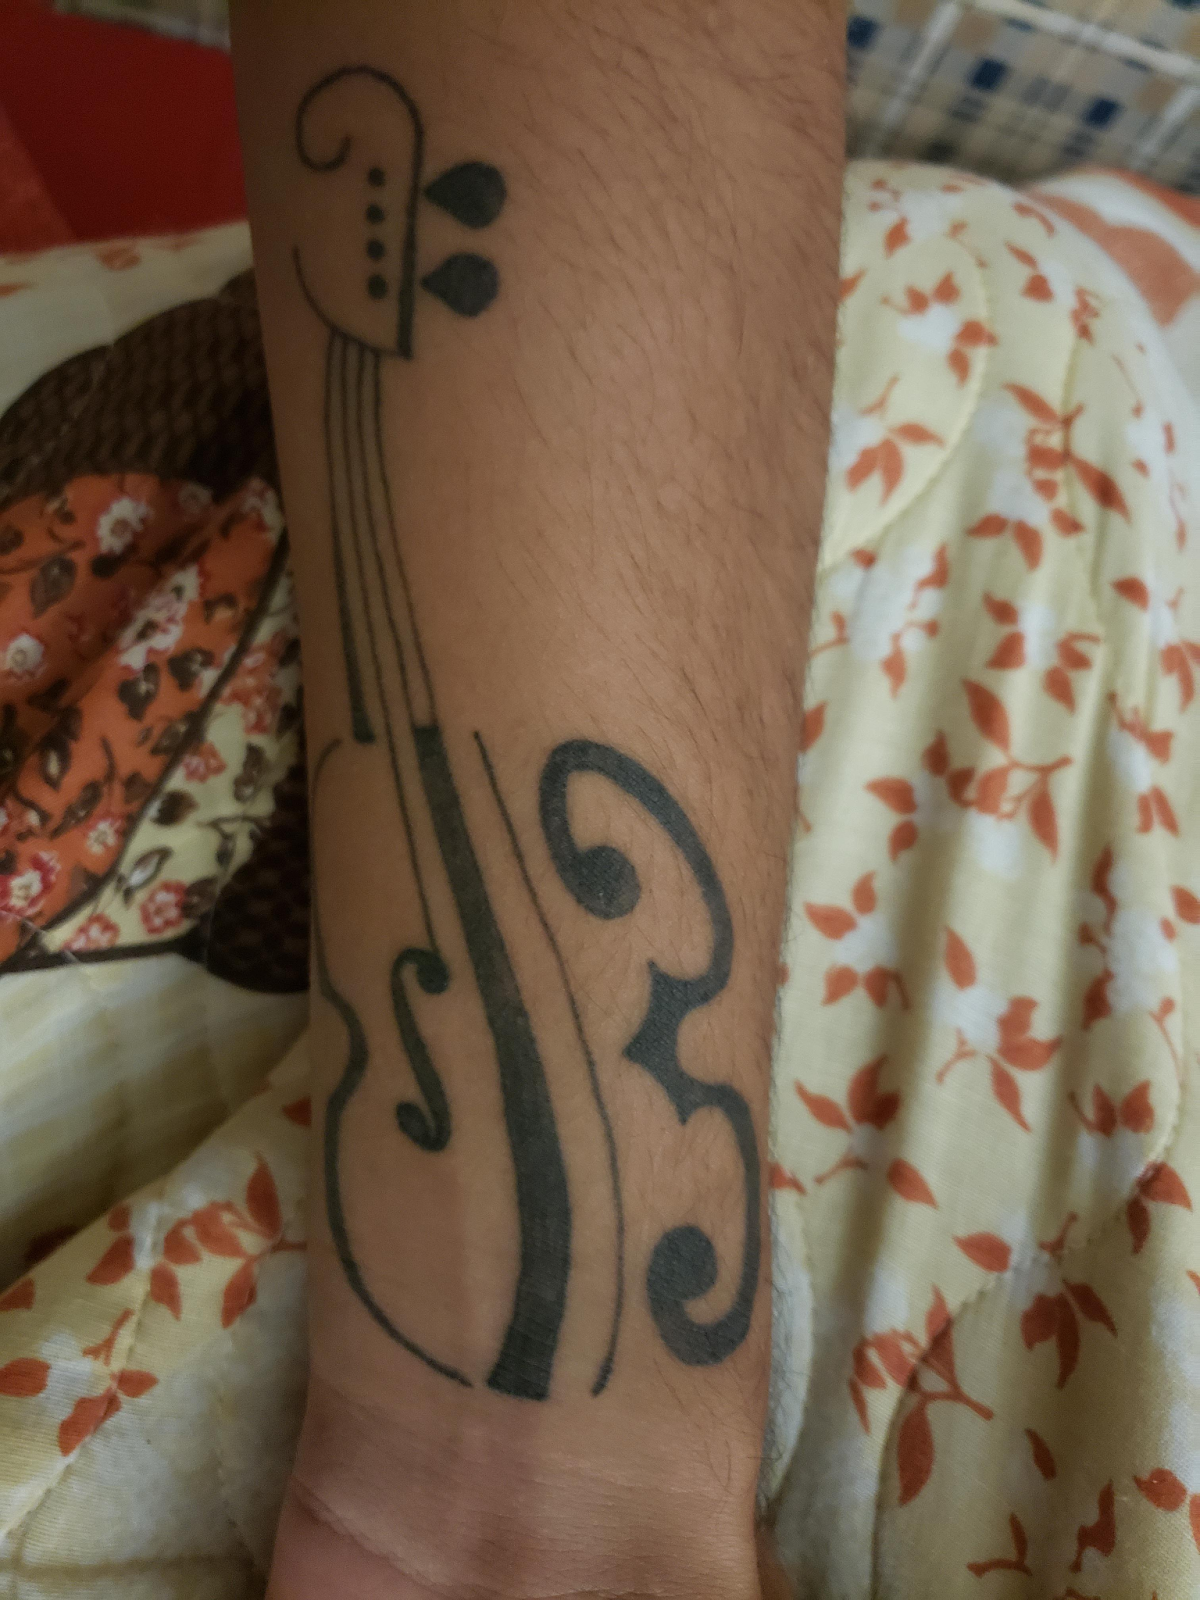 Alternate design viola tattoo on ankle